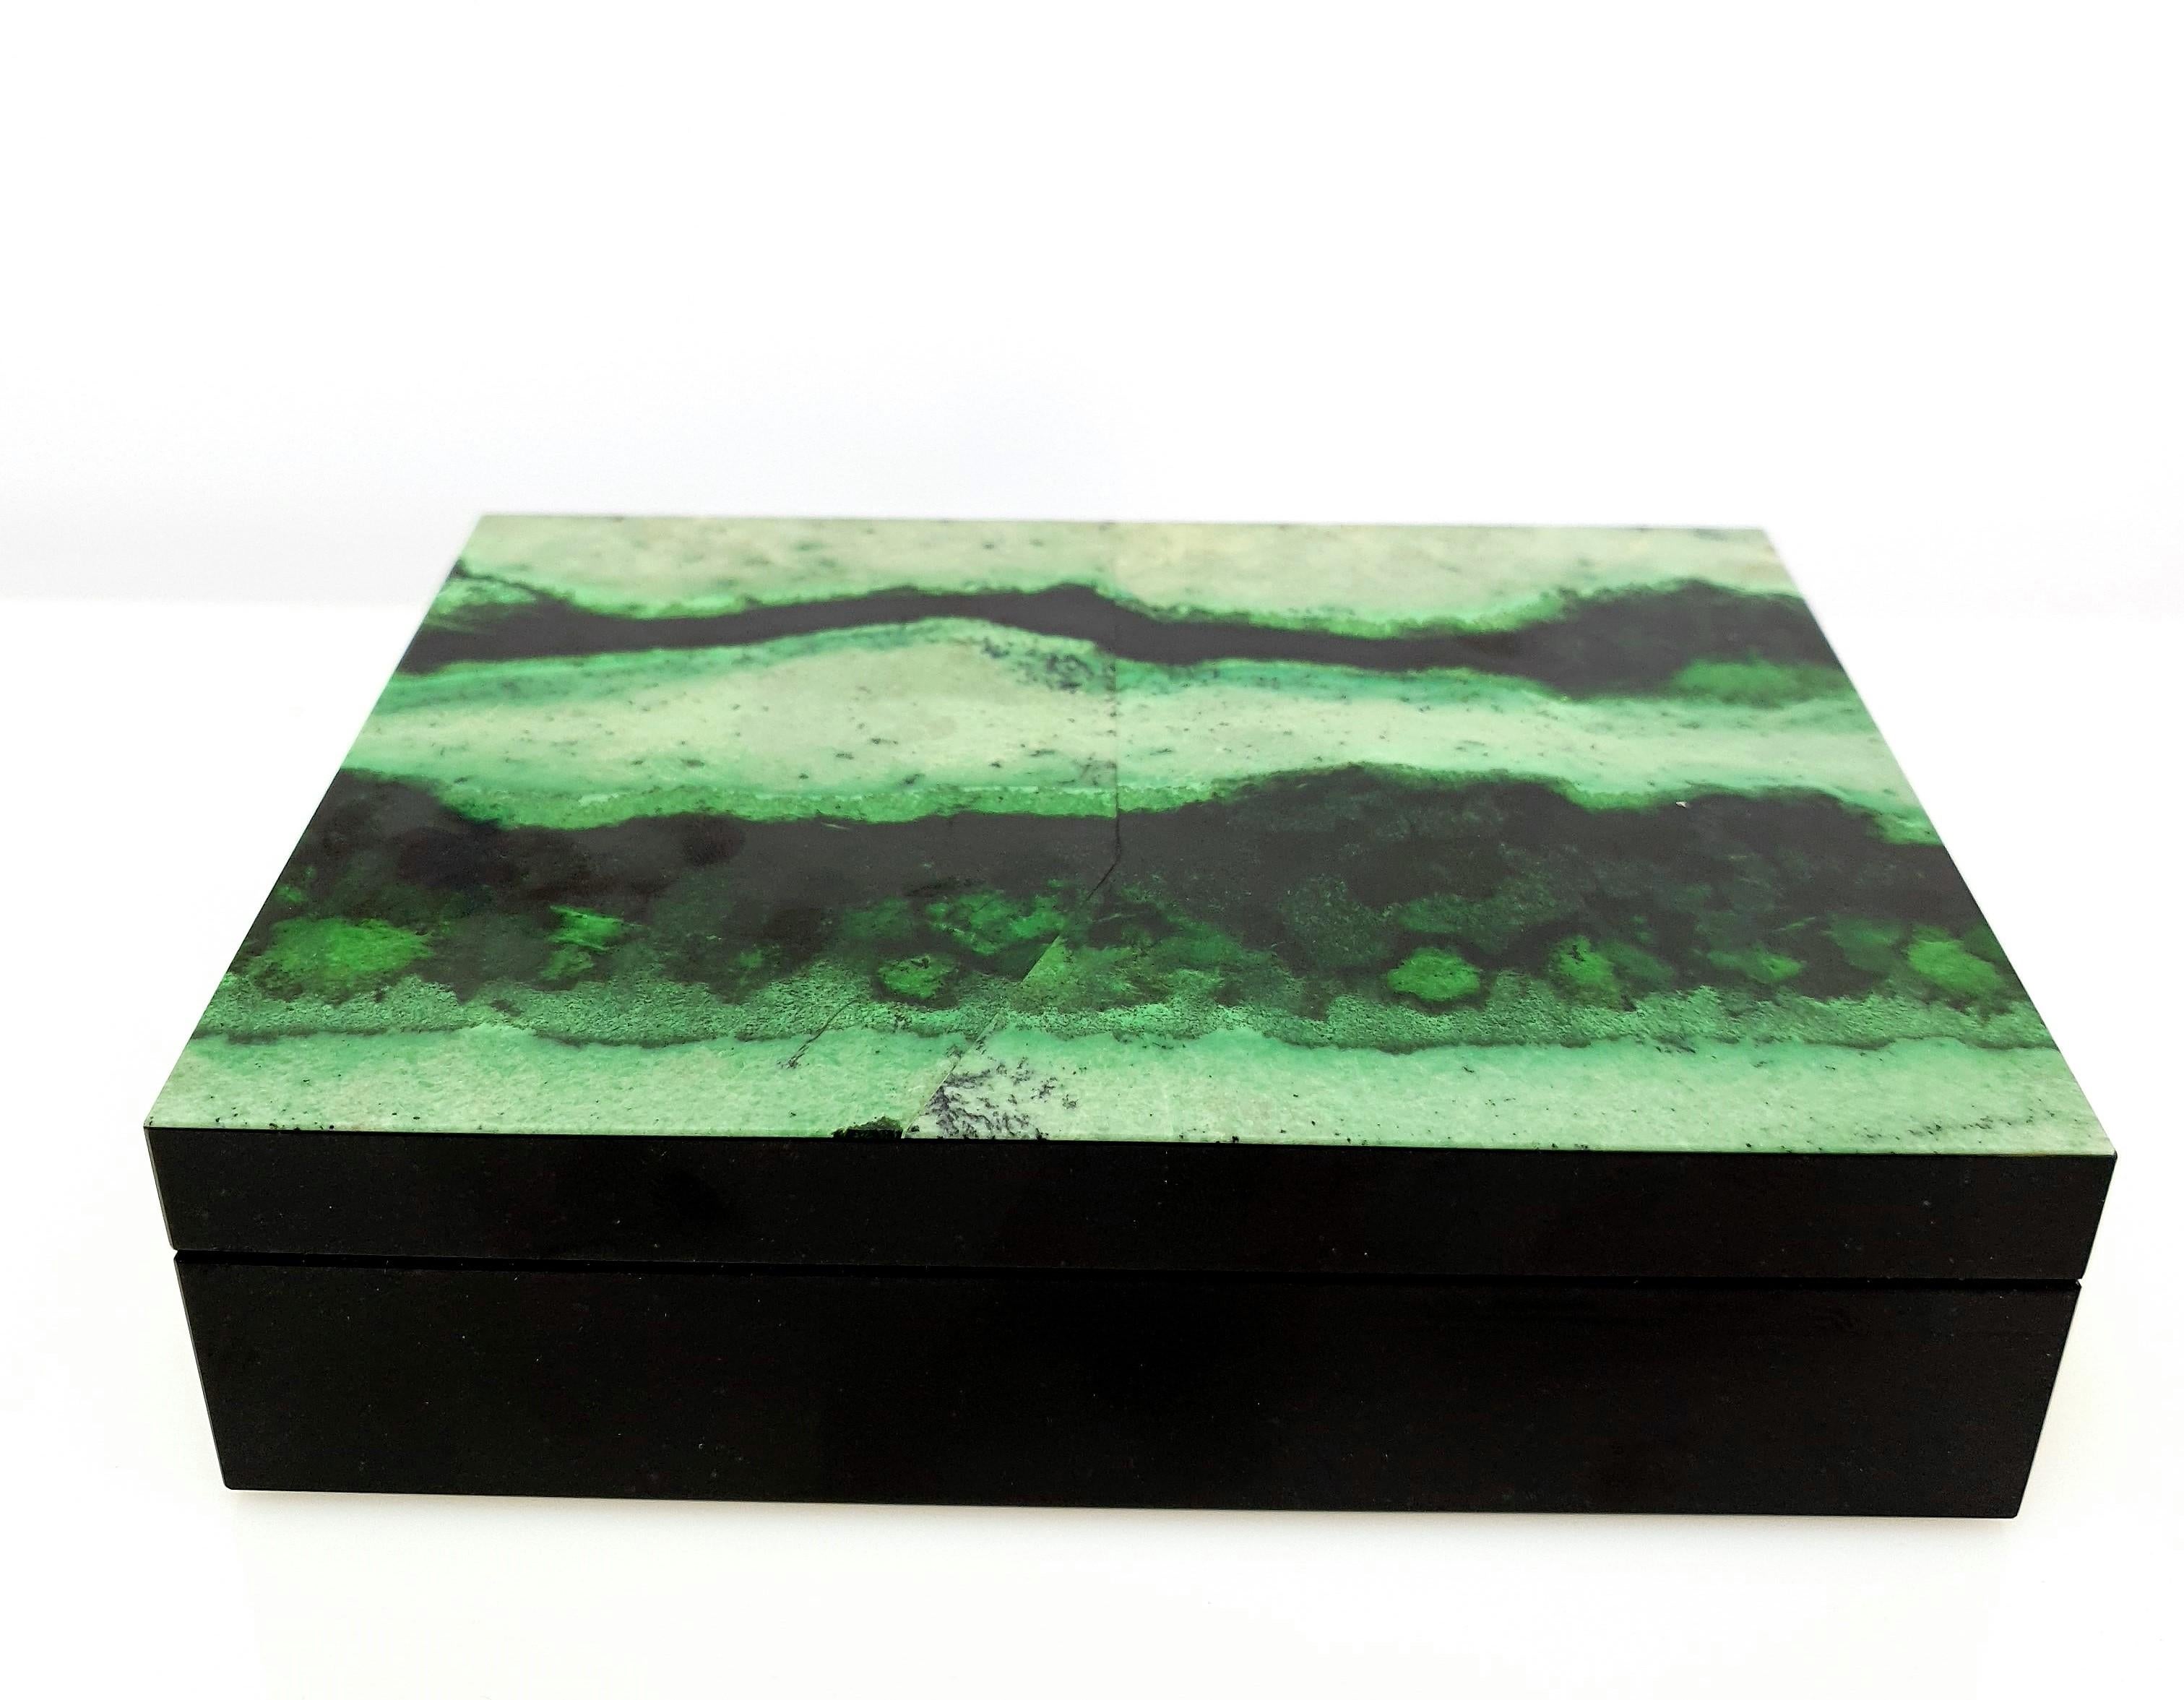 Eine natürliche handgefertigte grüne Granat Grossular und schwarzem Marmor dekorative Schmuck-Box.
Das Muster sieht aus wie ein kunstvolles Gemälde der Natur.

Das Inlay ist mit Zedernholz verkleidet und eignet sich ideal als Zigarrenkiste.
Der